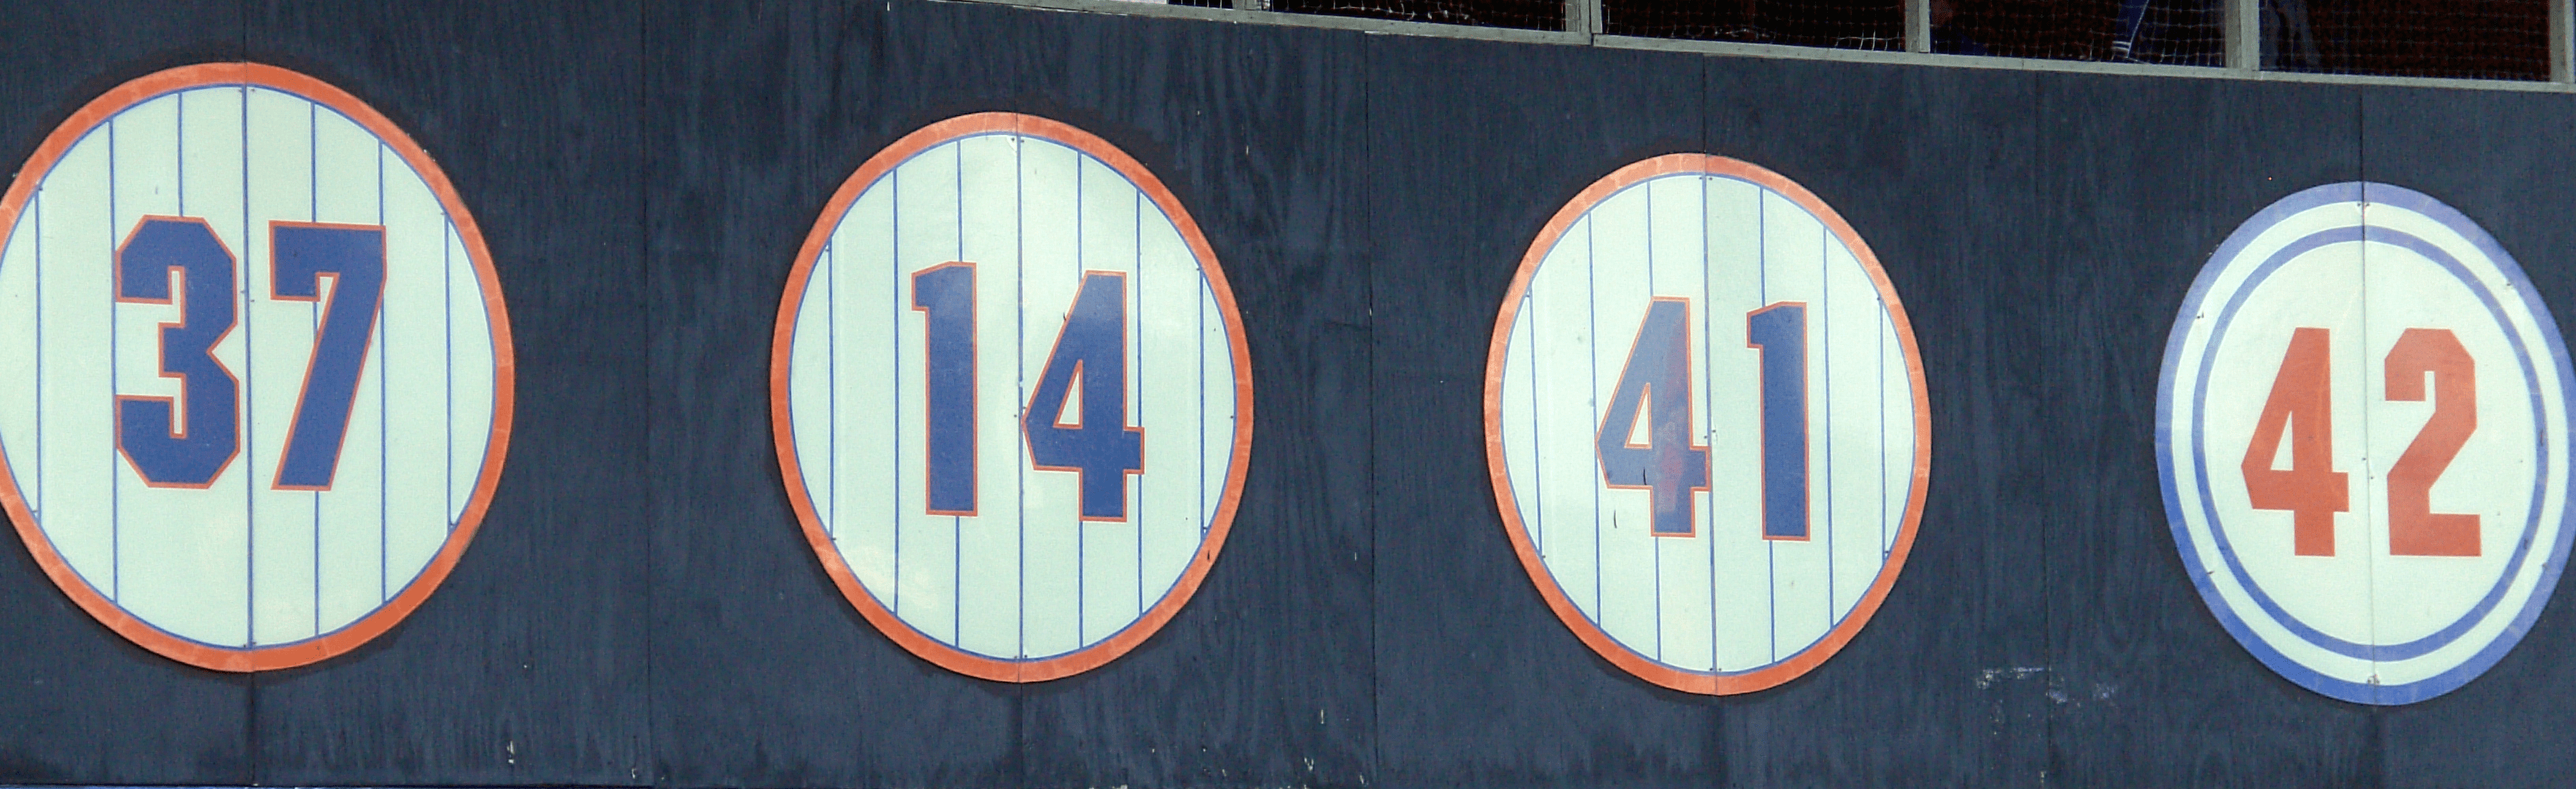 Mets_retired_numbers